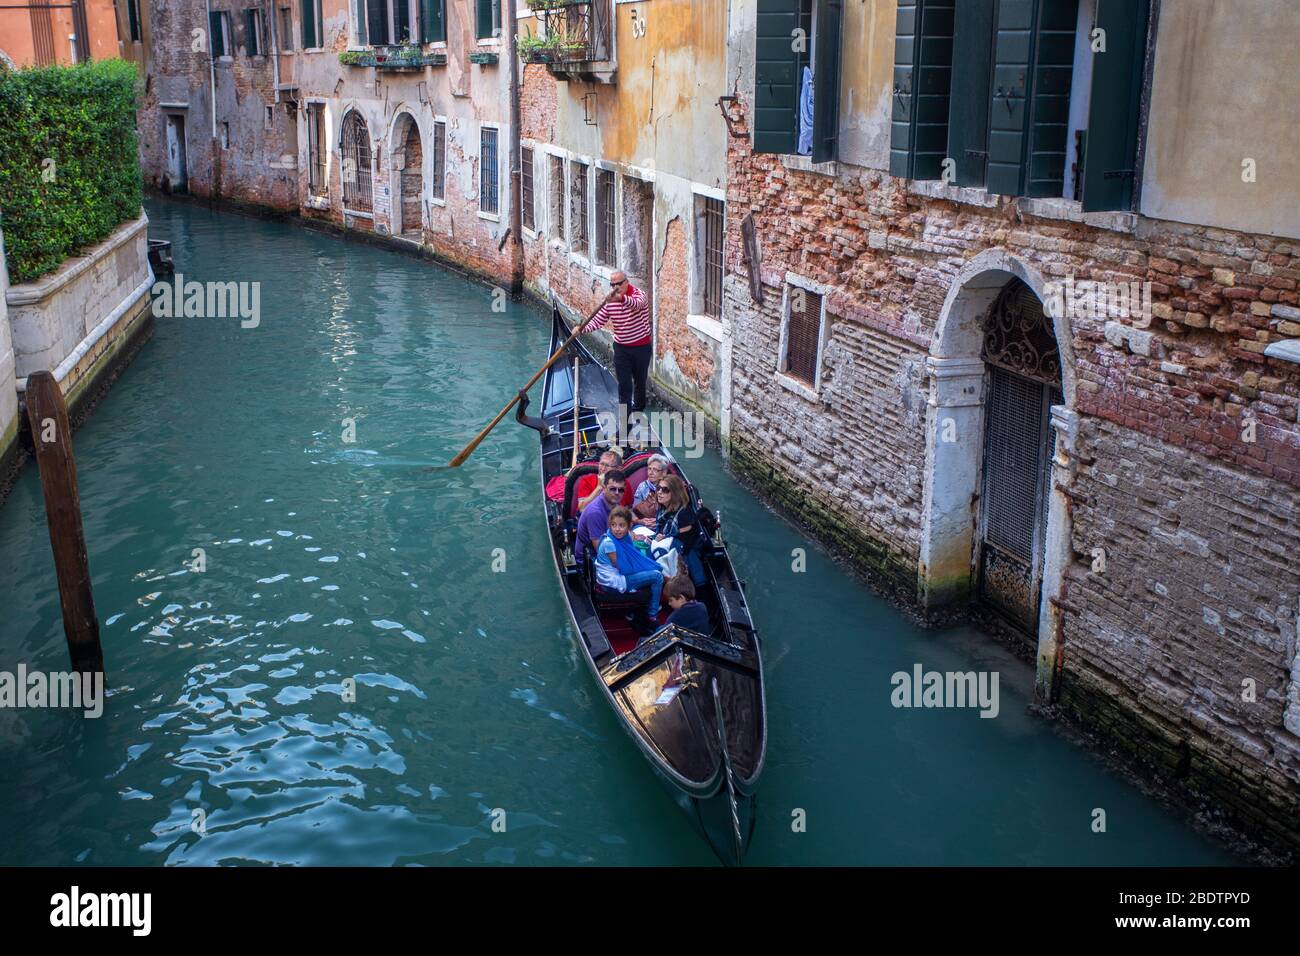 Les touristes voyagent dans une gondole traditionnelle sur un canal vénitien Banque D'Images